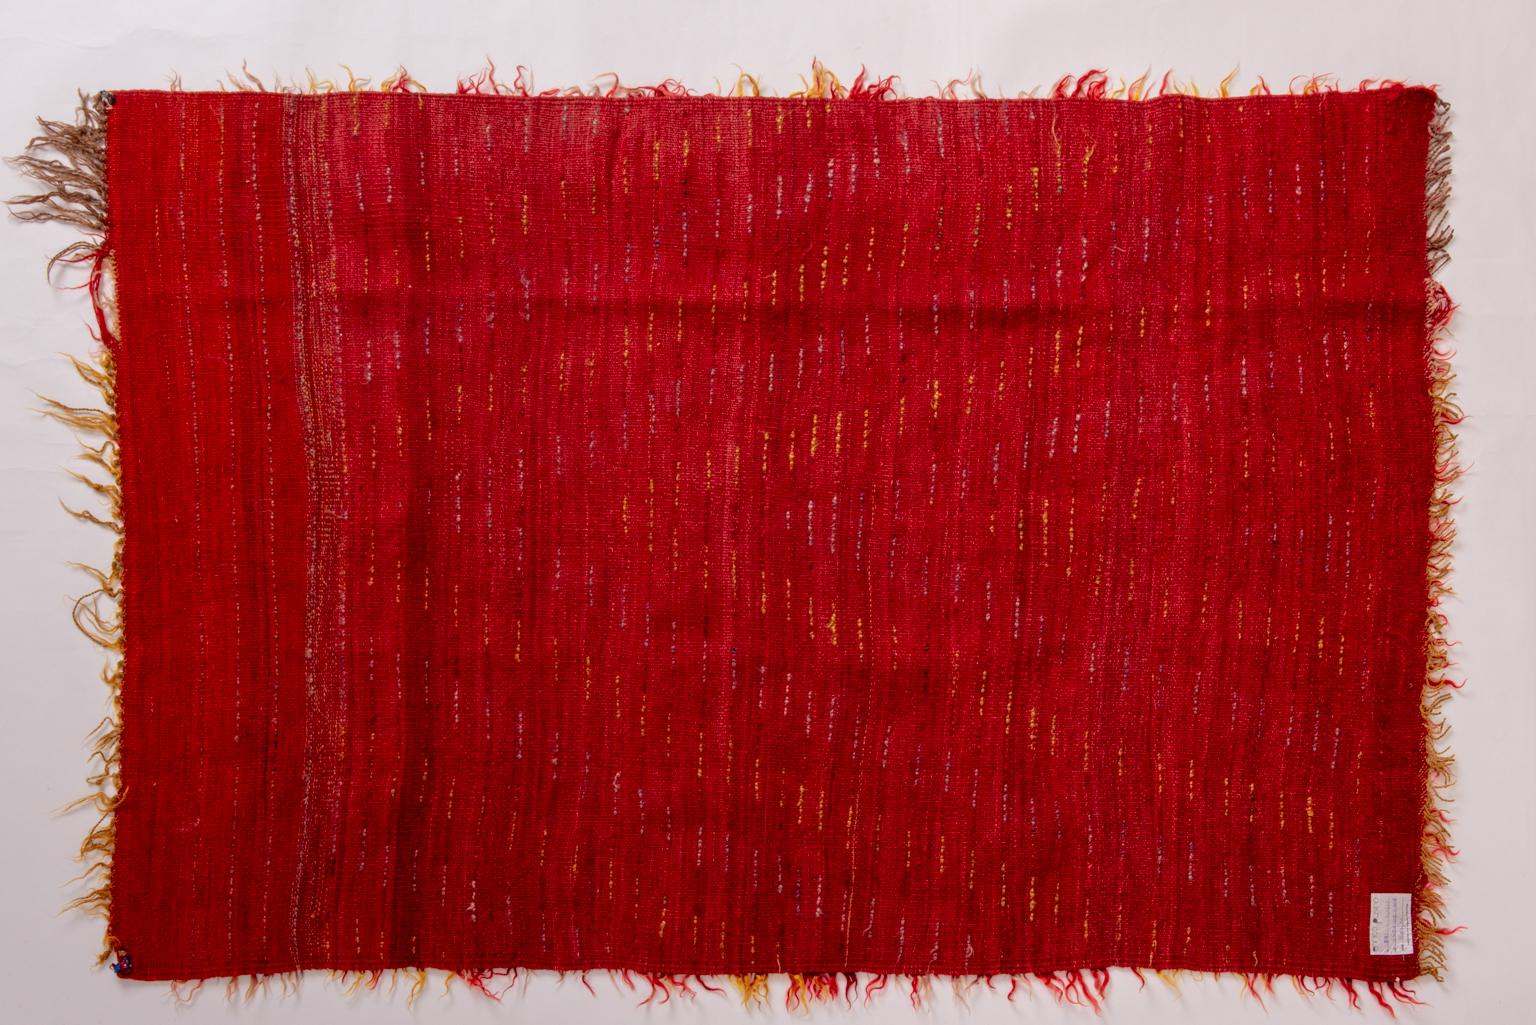 nr. 790 -  Vintage Turkish Tulu Teppich, mit weichem roten und gelben Fell, Shag Flor.  
Eine Idee über Ihrem Lieblingssessel, an der Wand oder neben Ihrem Bett.
